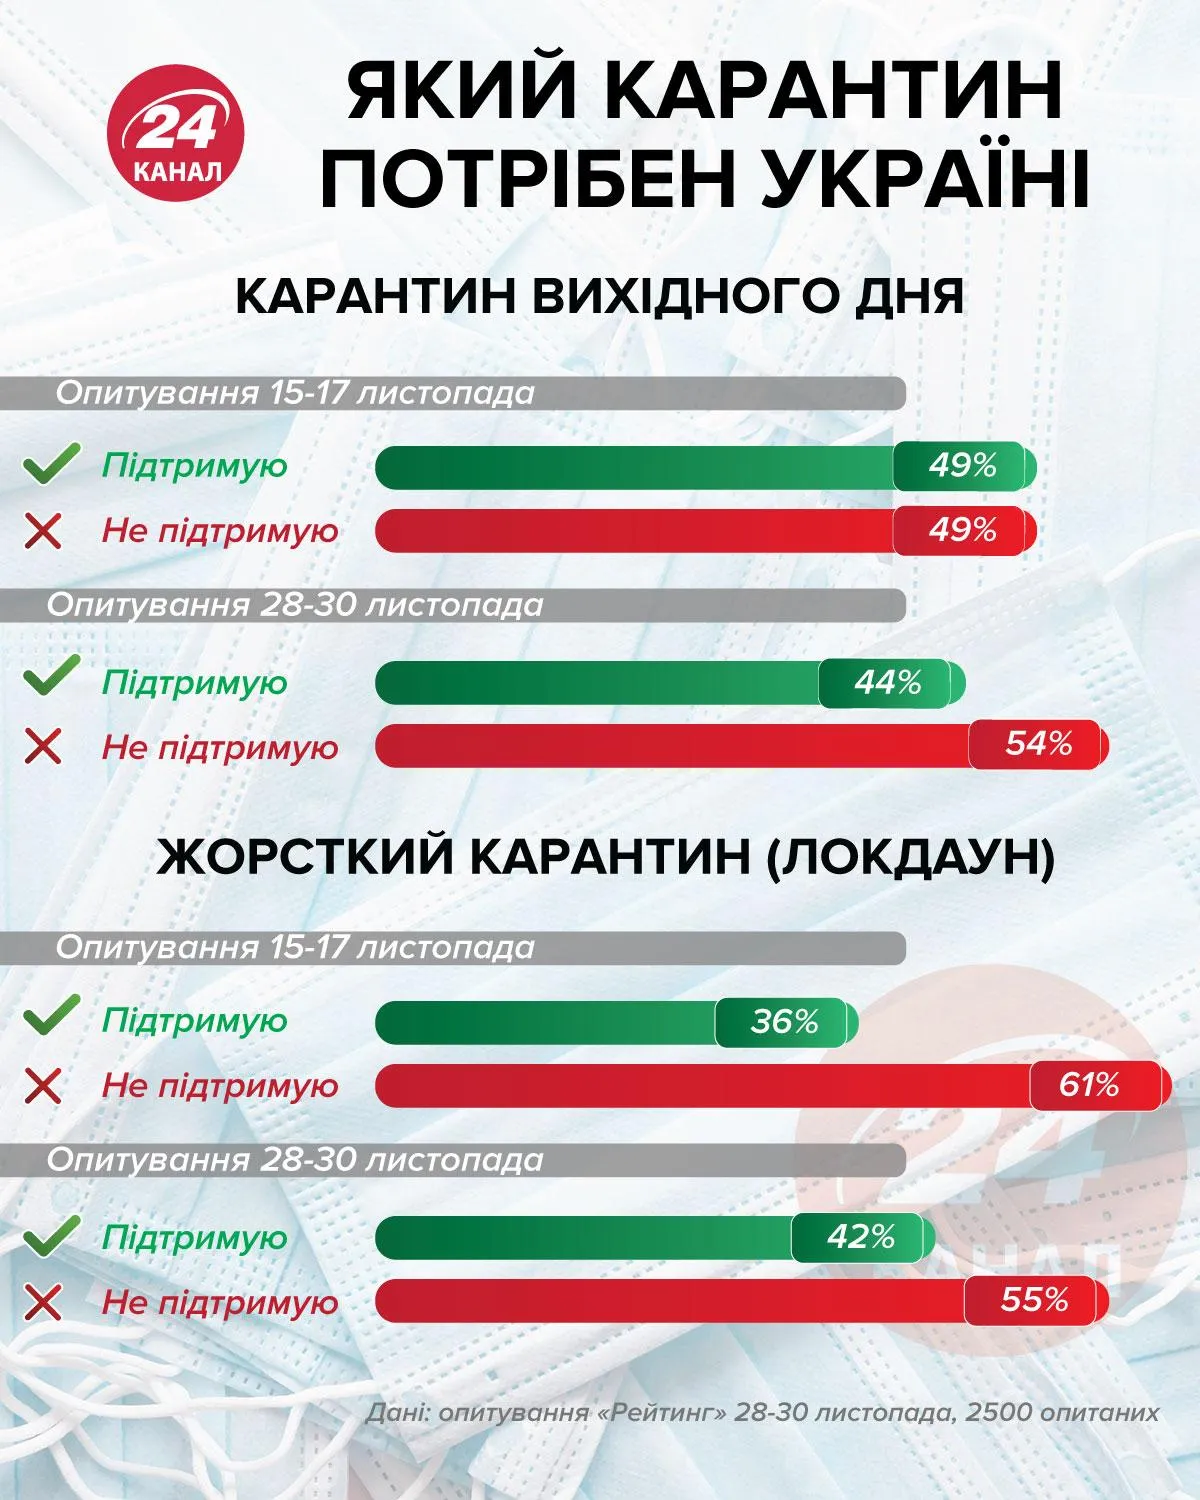 Який карантин підтримують українці інфографіка 24 канал